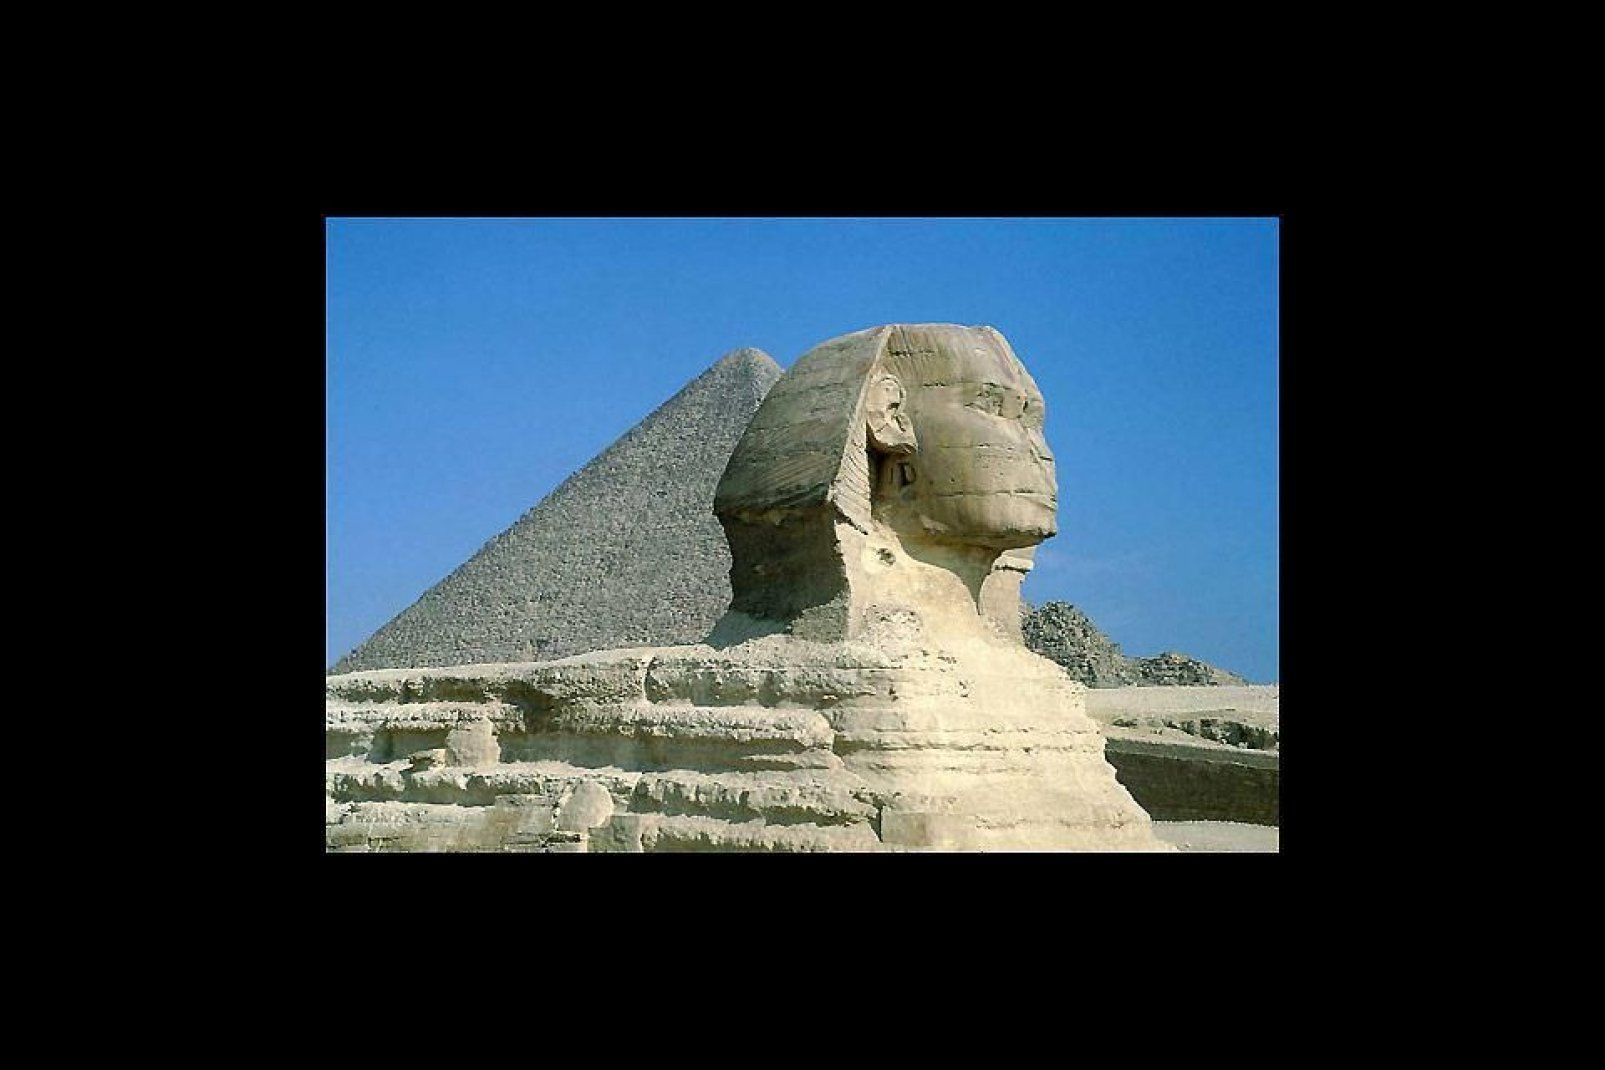 Le Shinx, célébrissime gardien des pyramides a été taillé directement dans le roc autour de 2500 av. J.-C.